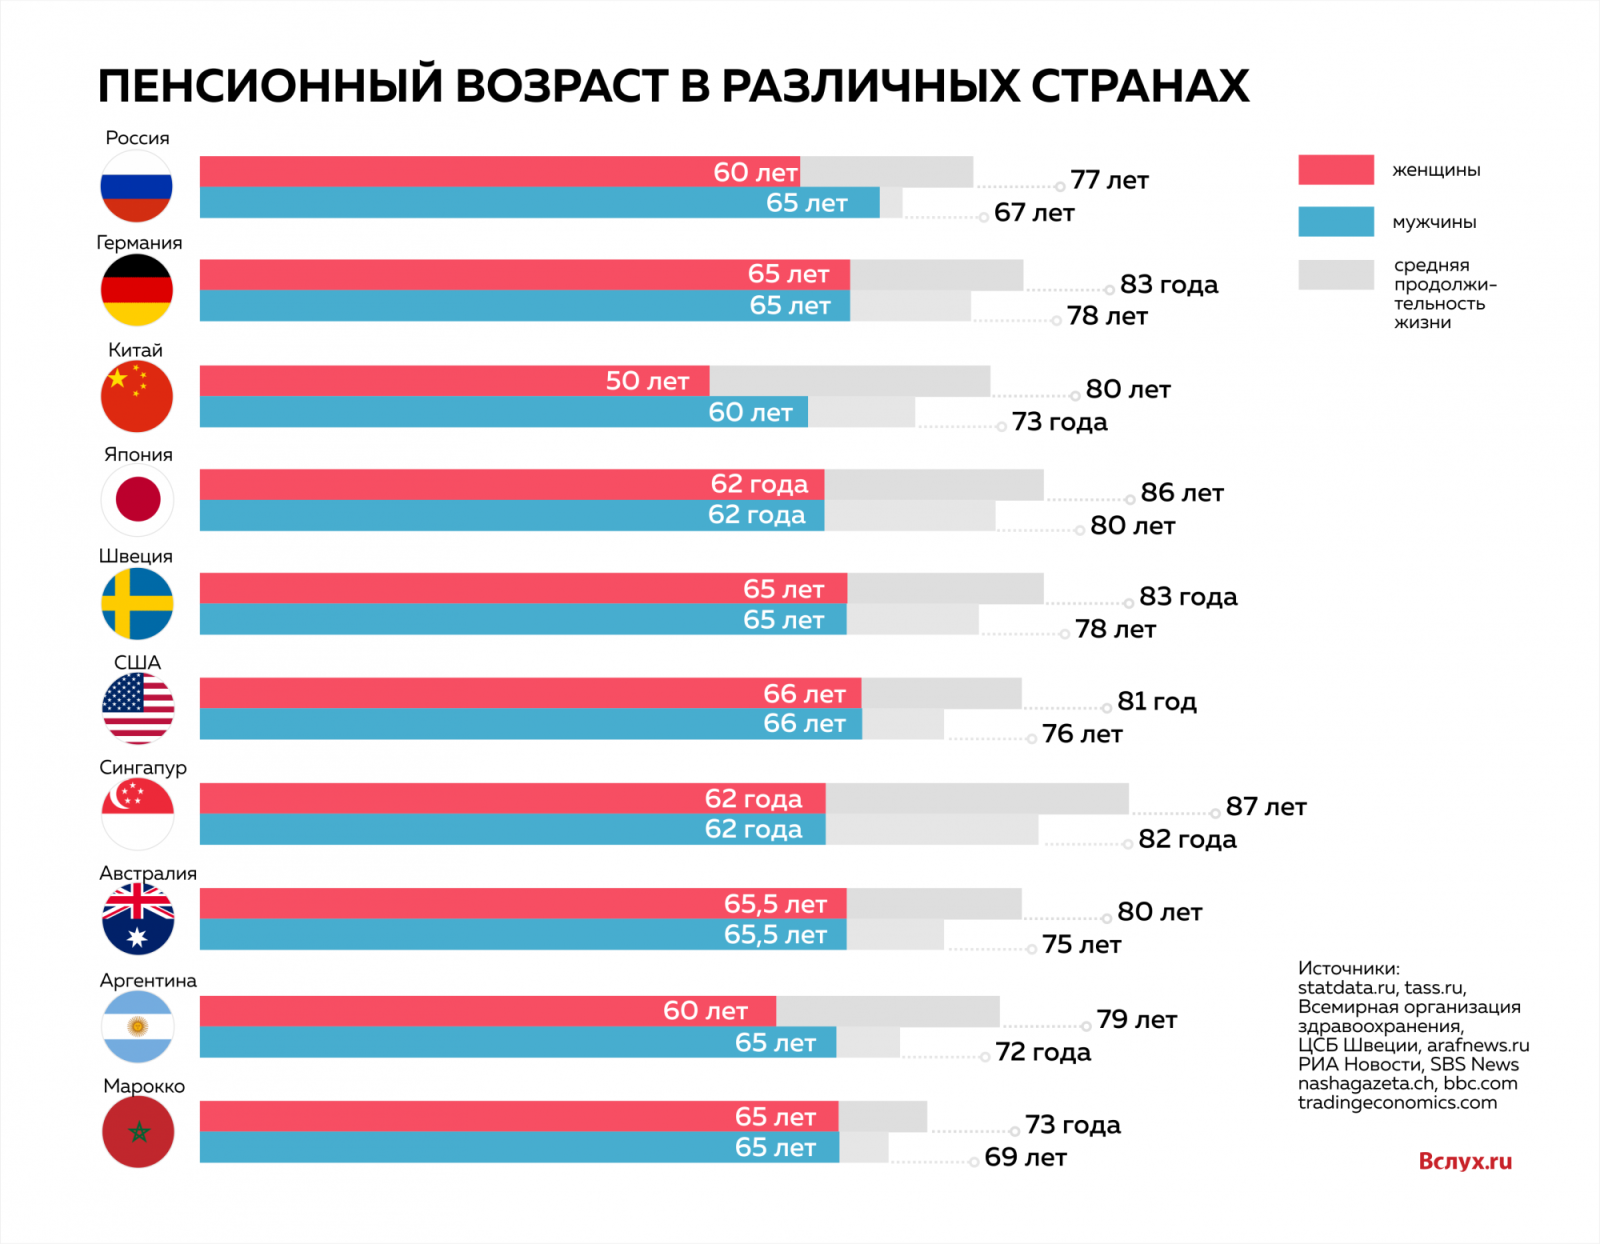 Уменьшить пенсионный возраст в россии